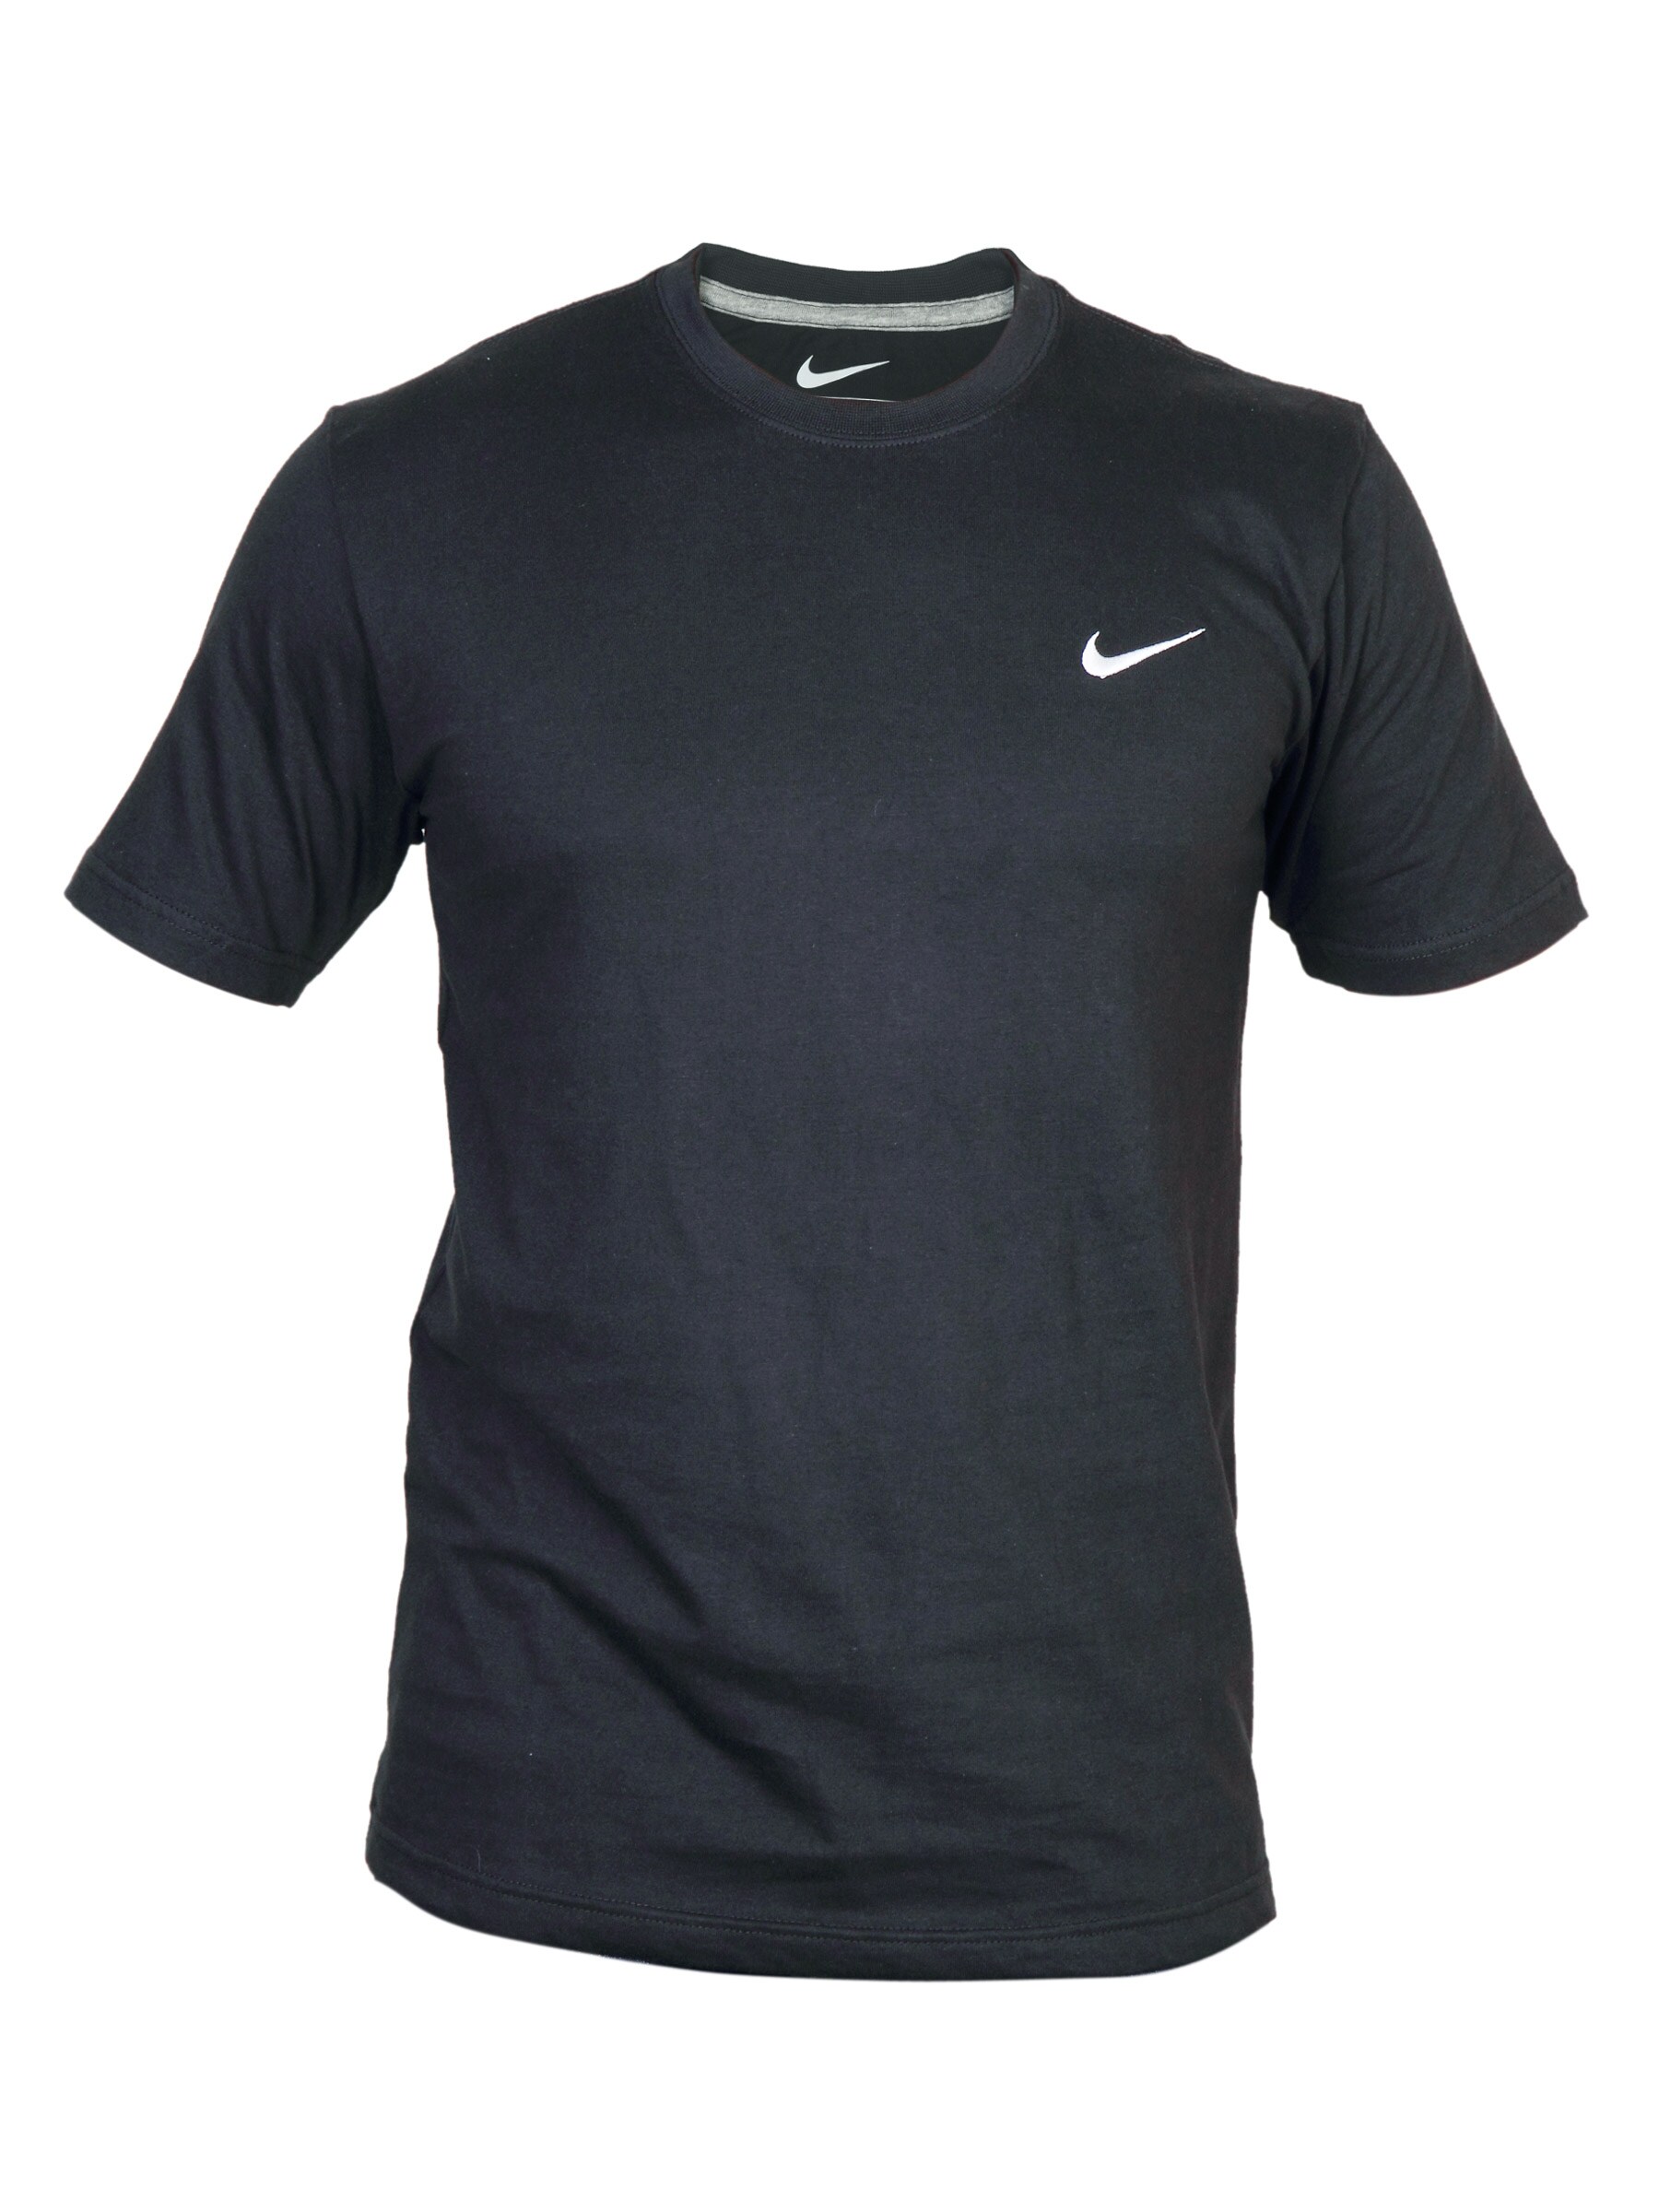 Nike Men's As Swoosh T-Shirt